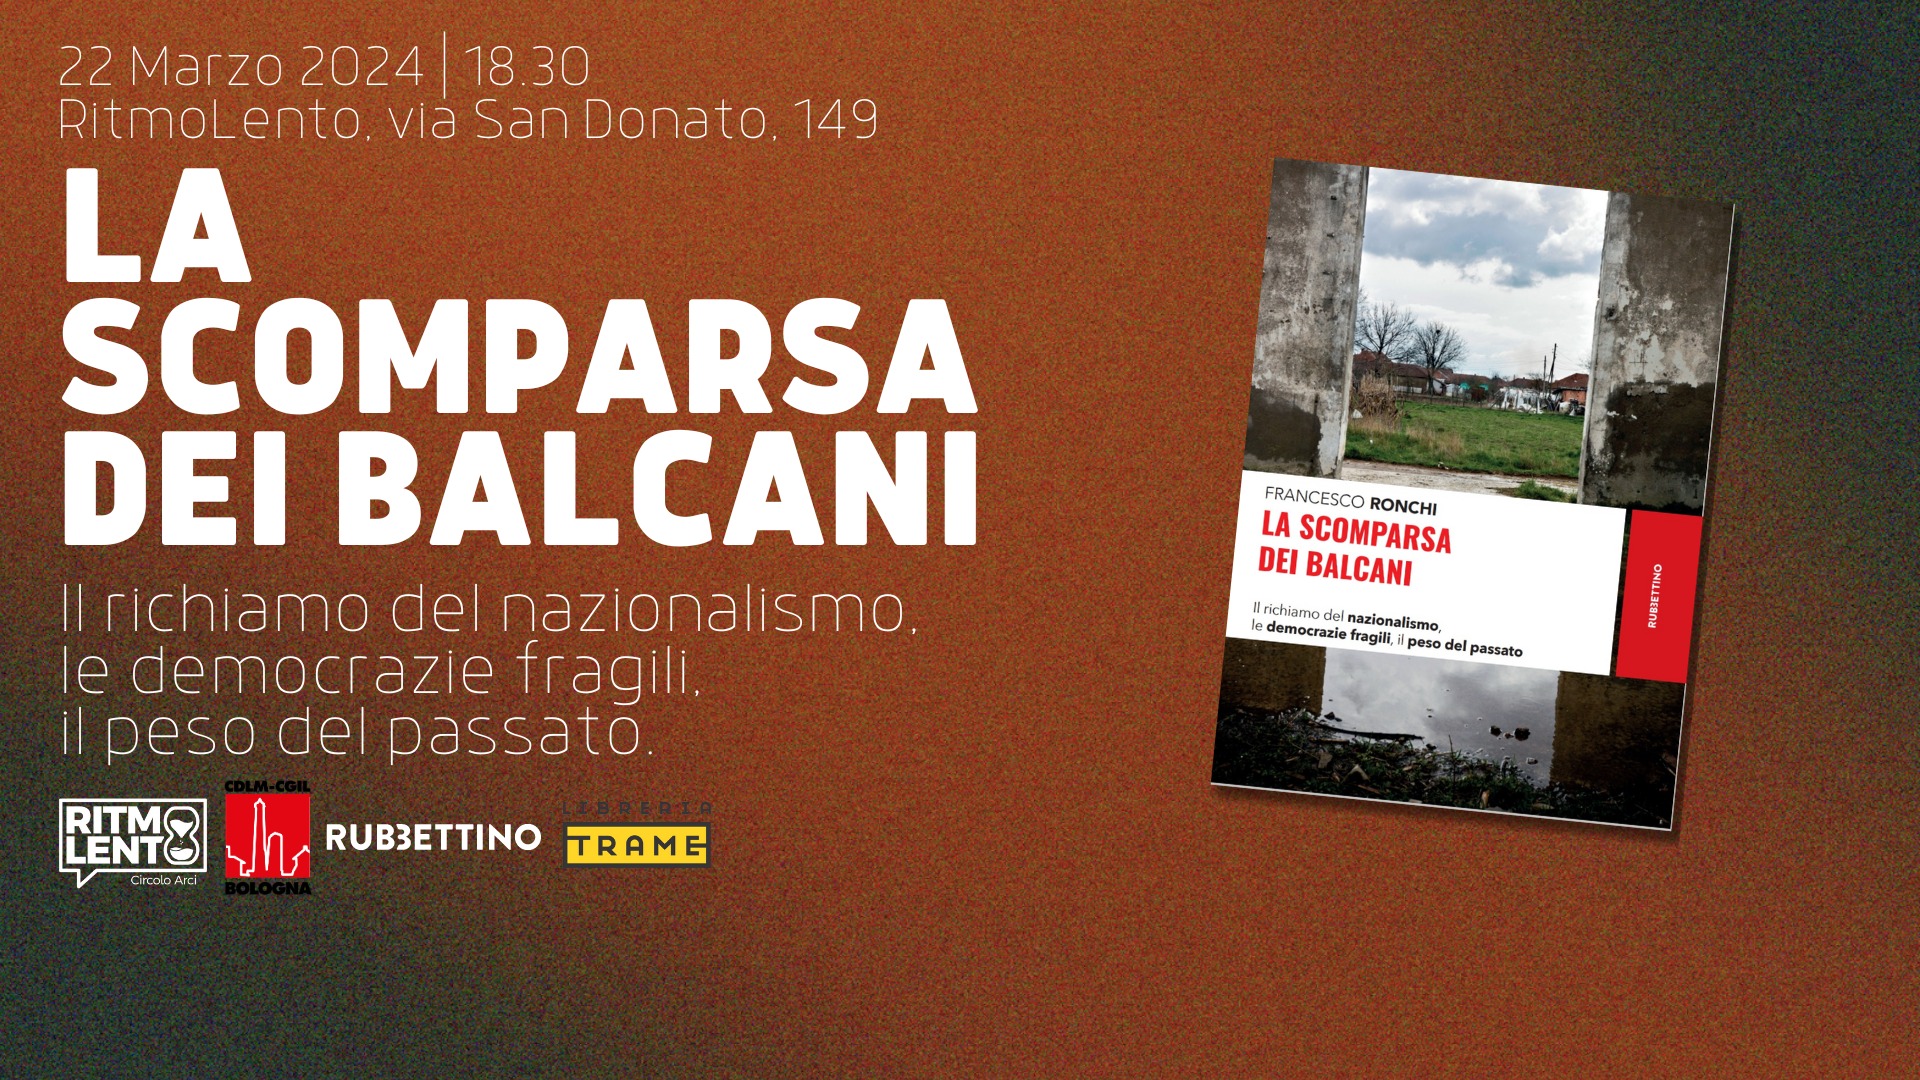 LA SCOMPARSA DEI BALCANI, venerdì 22 presentazione del volume di Francesco Ronchi